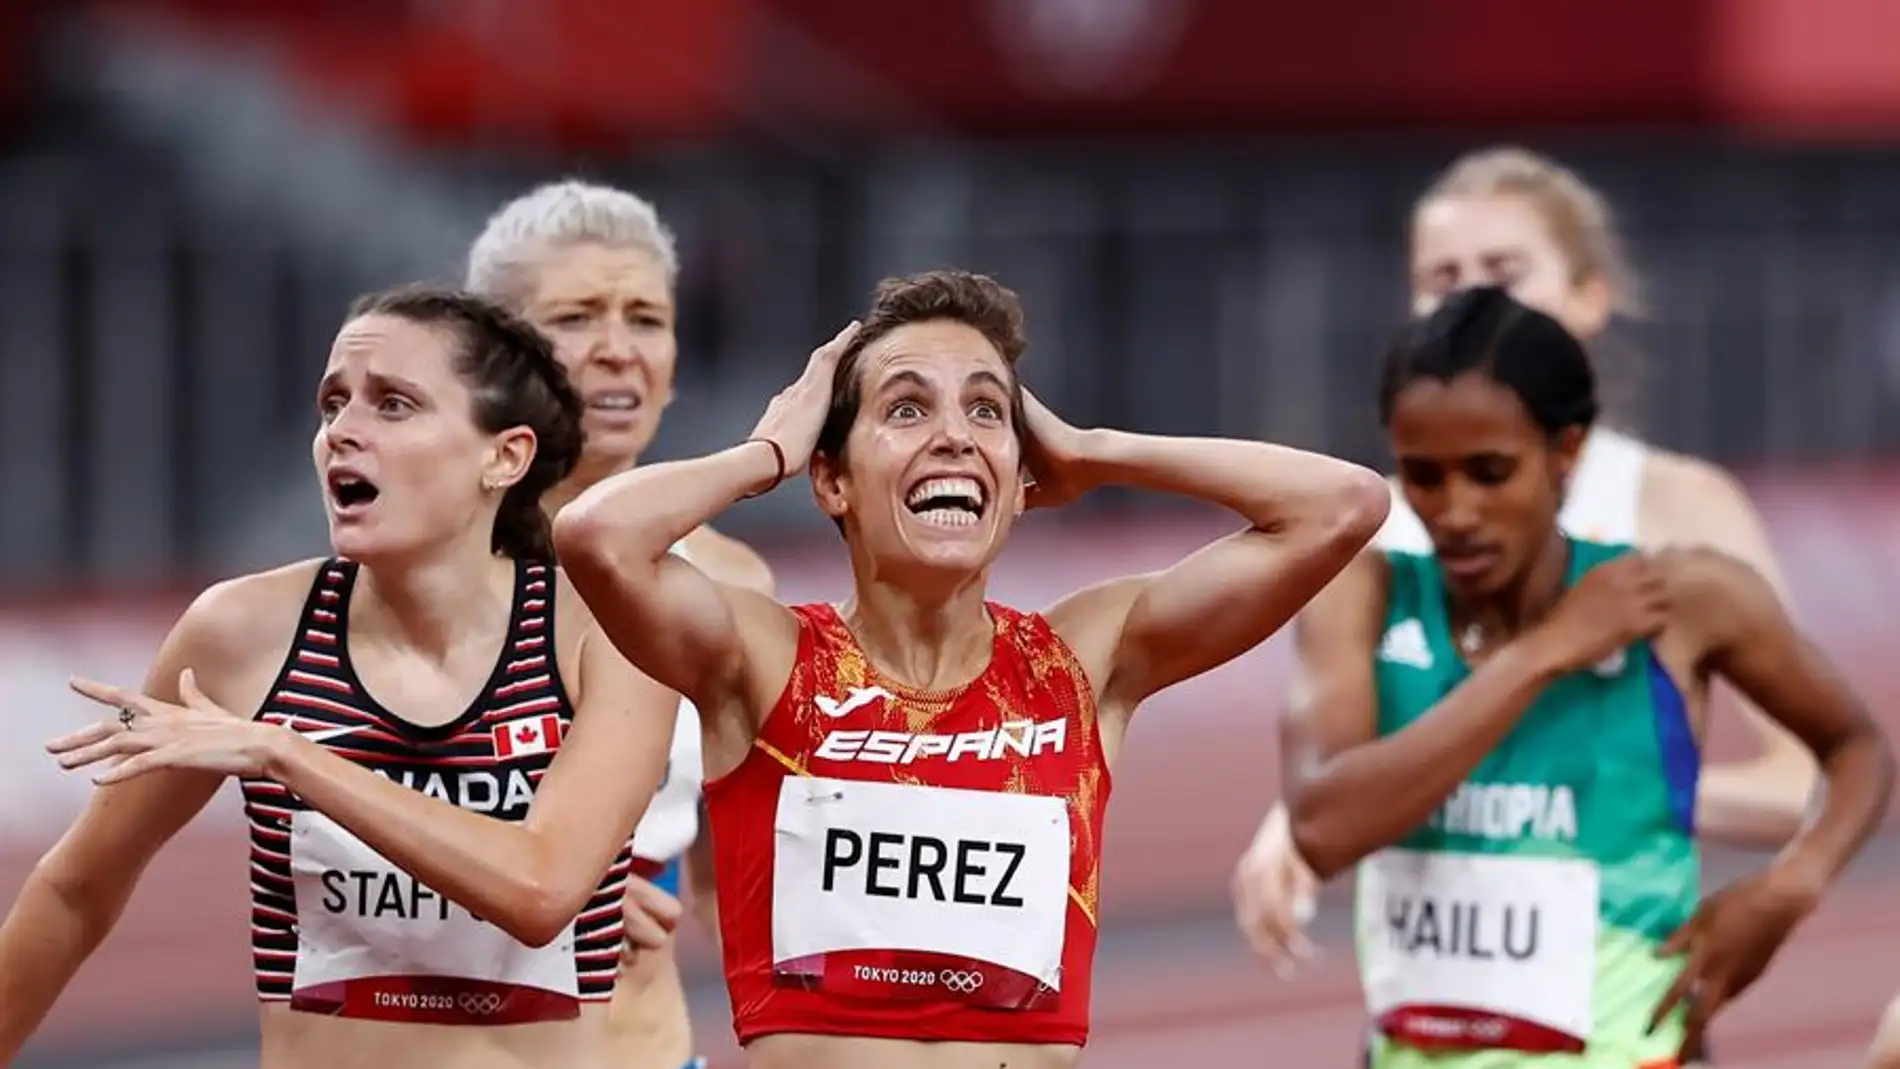 La incontrolable euforia al ver a tu pareja meterse en una final de Juegos Olímpicos